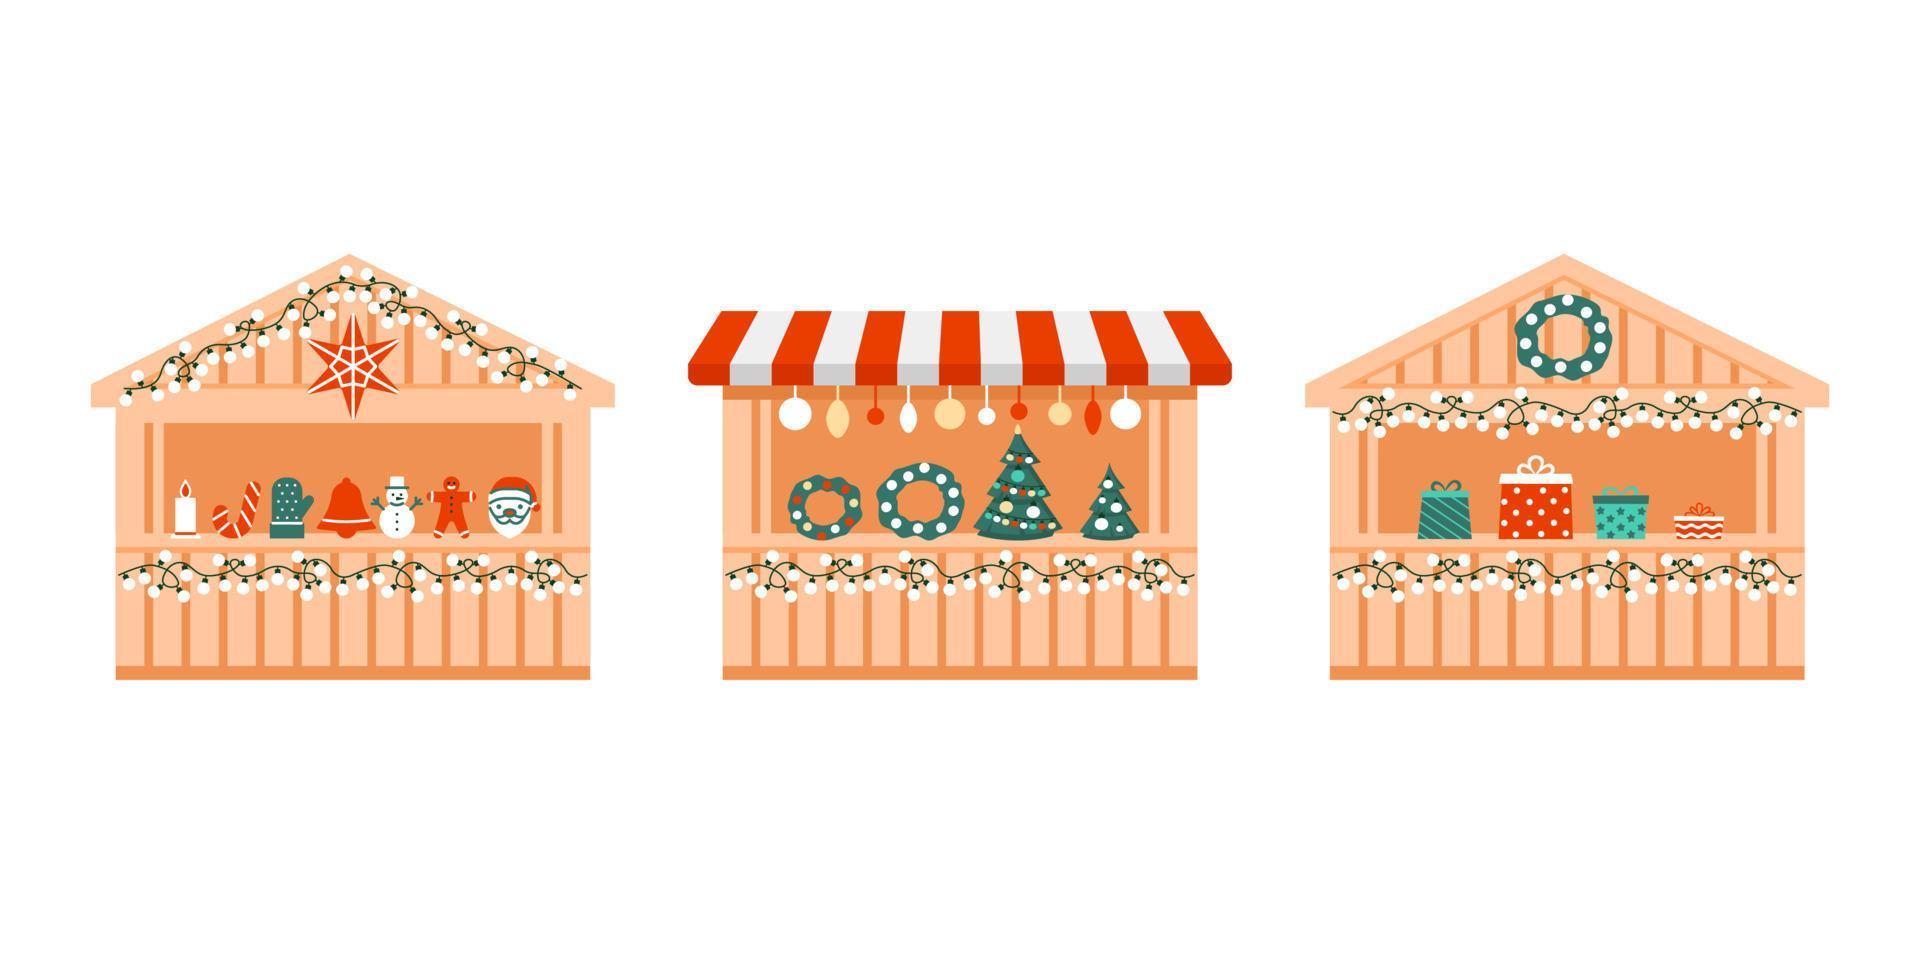 feira de natal ao ar livre, mercado de férias com presentes, loja exterior em uma pequena casa. quiosques de madeira com varejo de comércio no natal e ano novo. ilustração plana do vetor